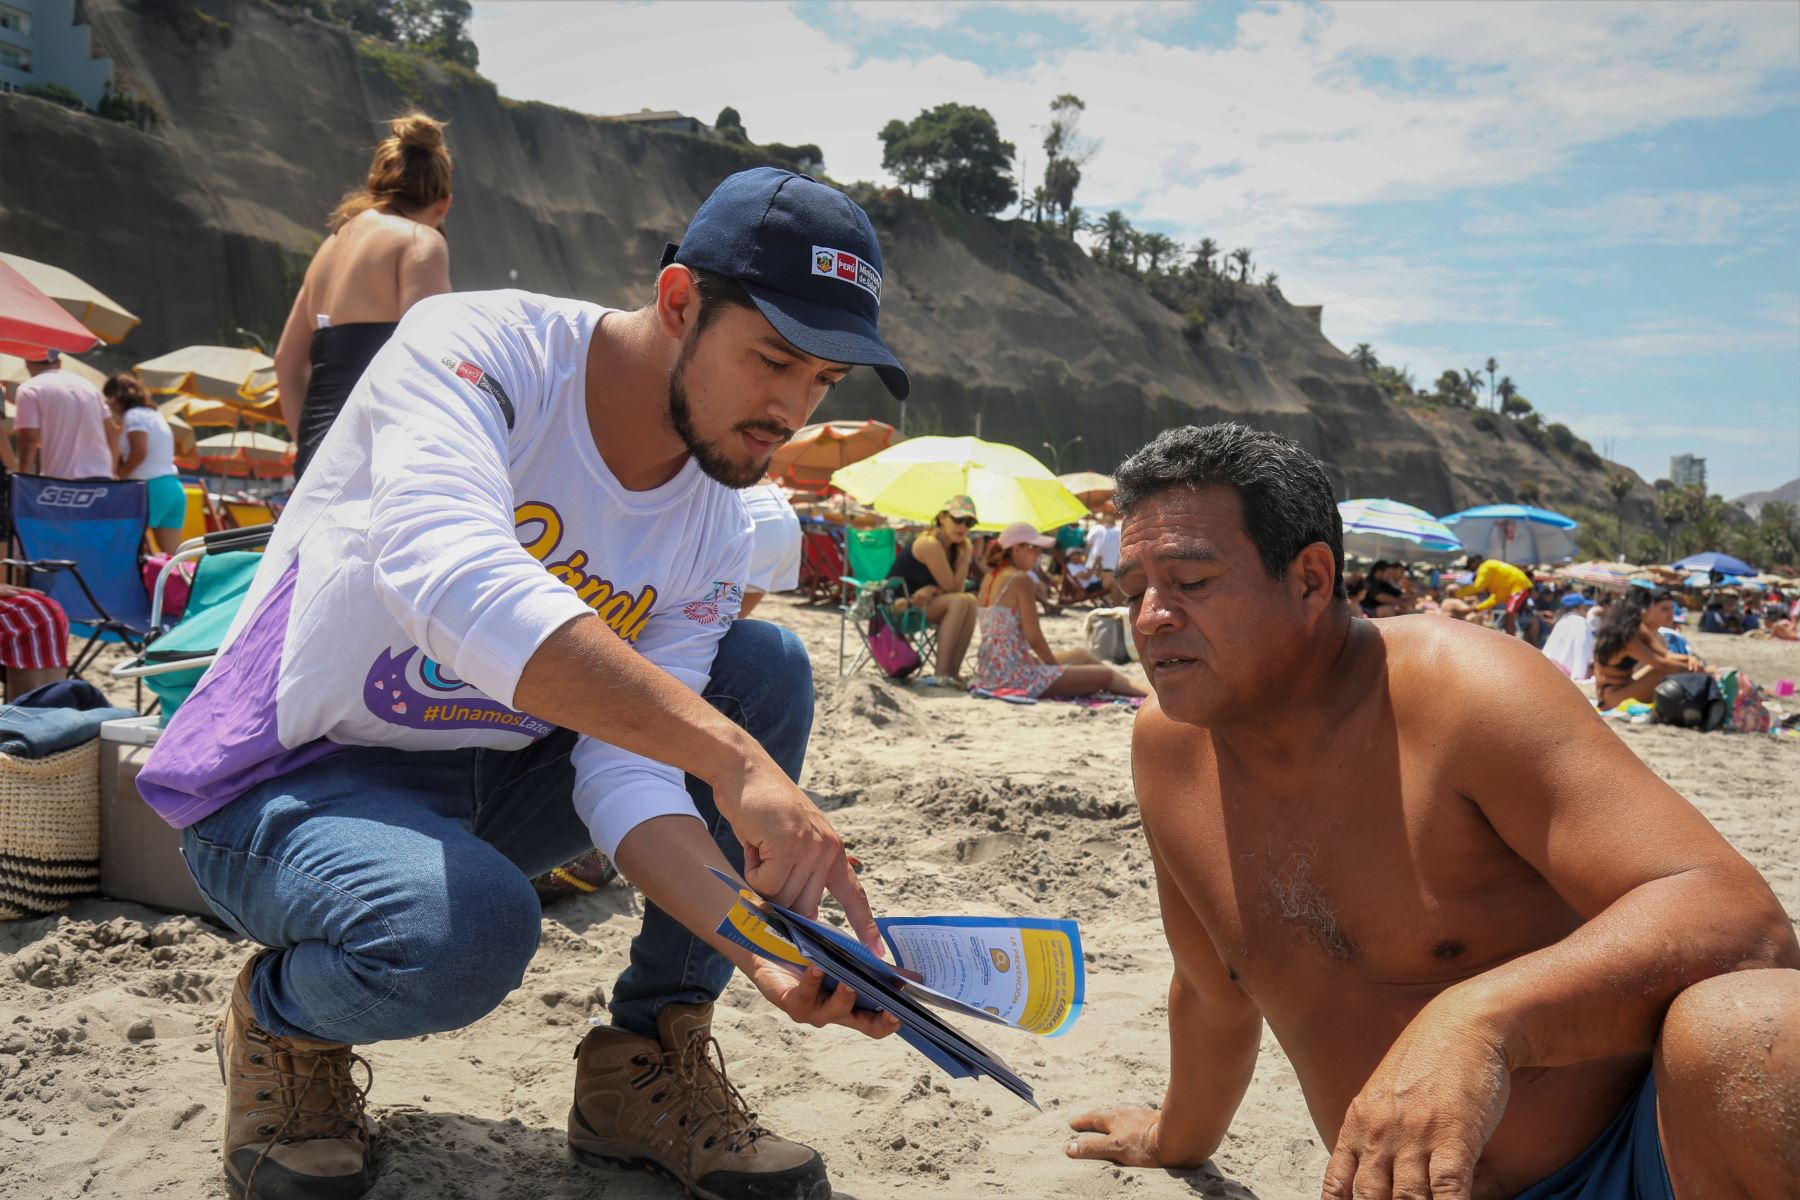 Como parte de las actividades del Día del Lunar, el Minsa realizó una campaña de salud en la playa Los Yuyos de Barranco, donde los veraneantes recibieron información sobre los cuidados necesarios para evitar el cáncer de piel.

Foto: ANDINA/MINSA